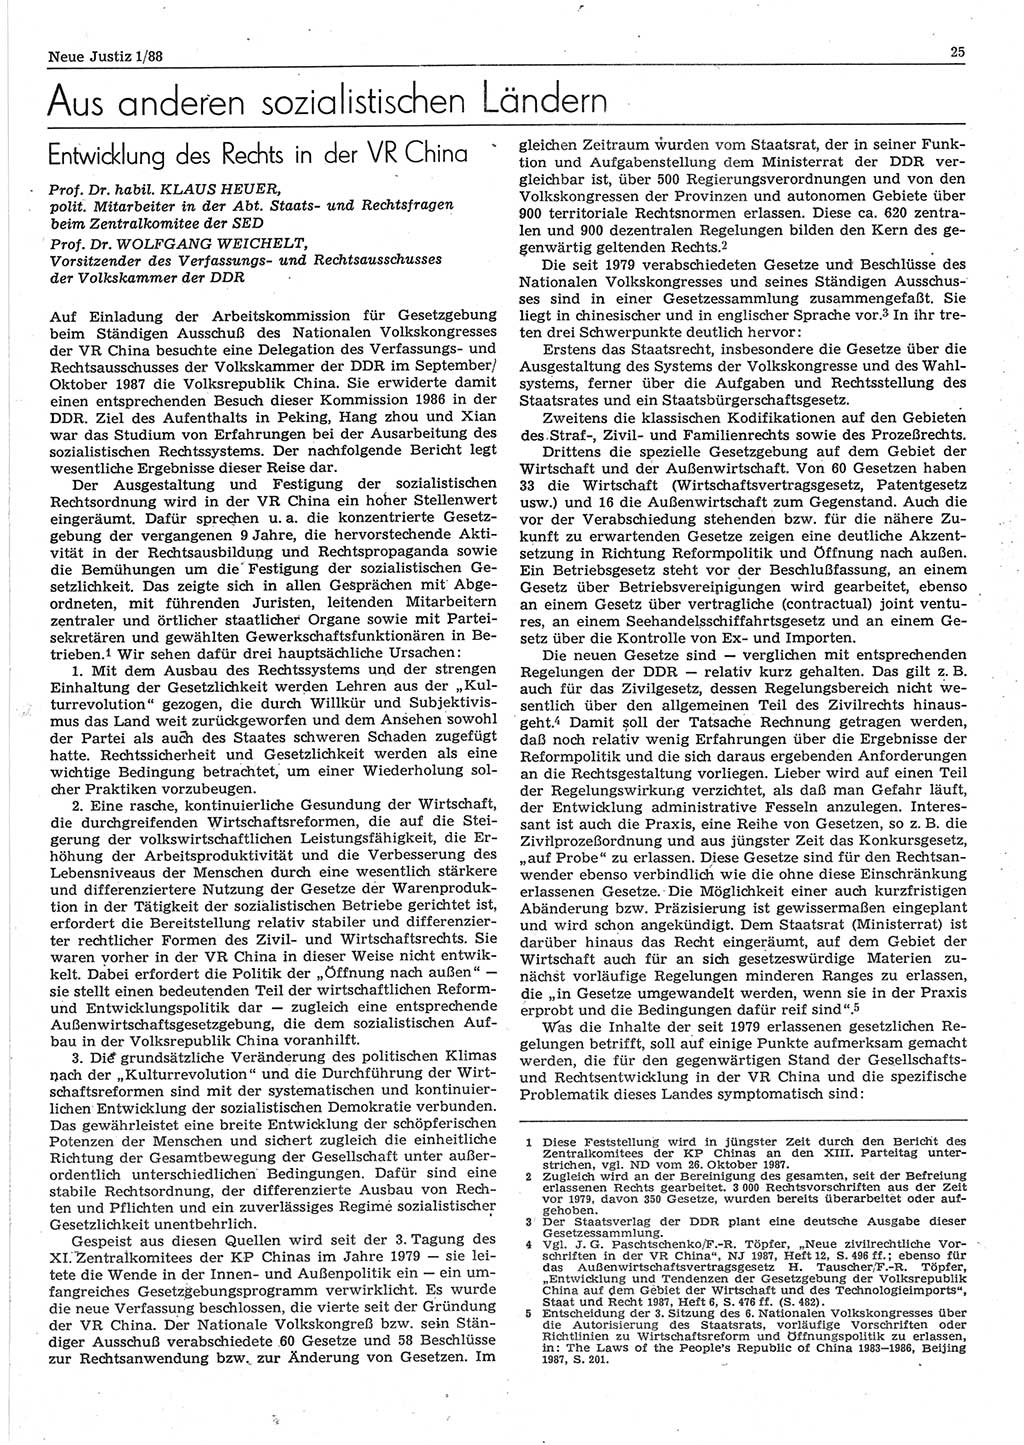 Neue Justiz (NJ), Zeitschrift für sozialistisches Recht und Gesetzlichkeit [Deutsche Demokratische Republik (DDR)], 42. Jahrgang 1988, Seite 25 (NJ DDR 1988, S. 25)